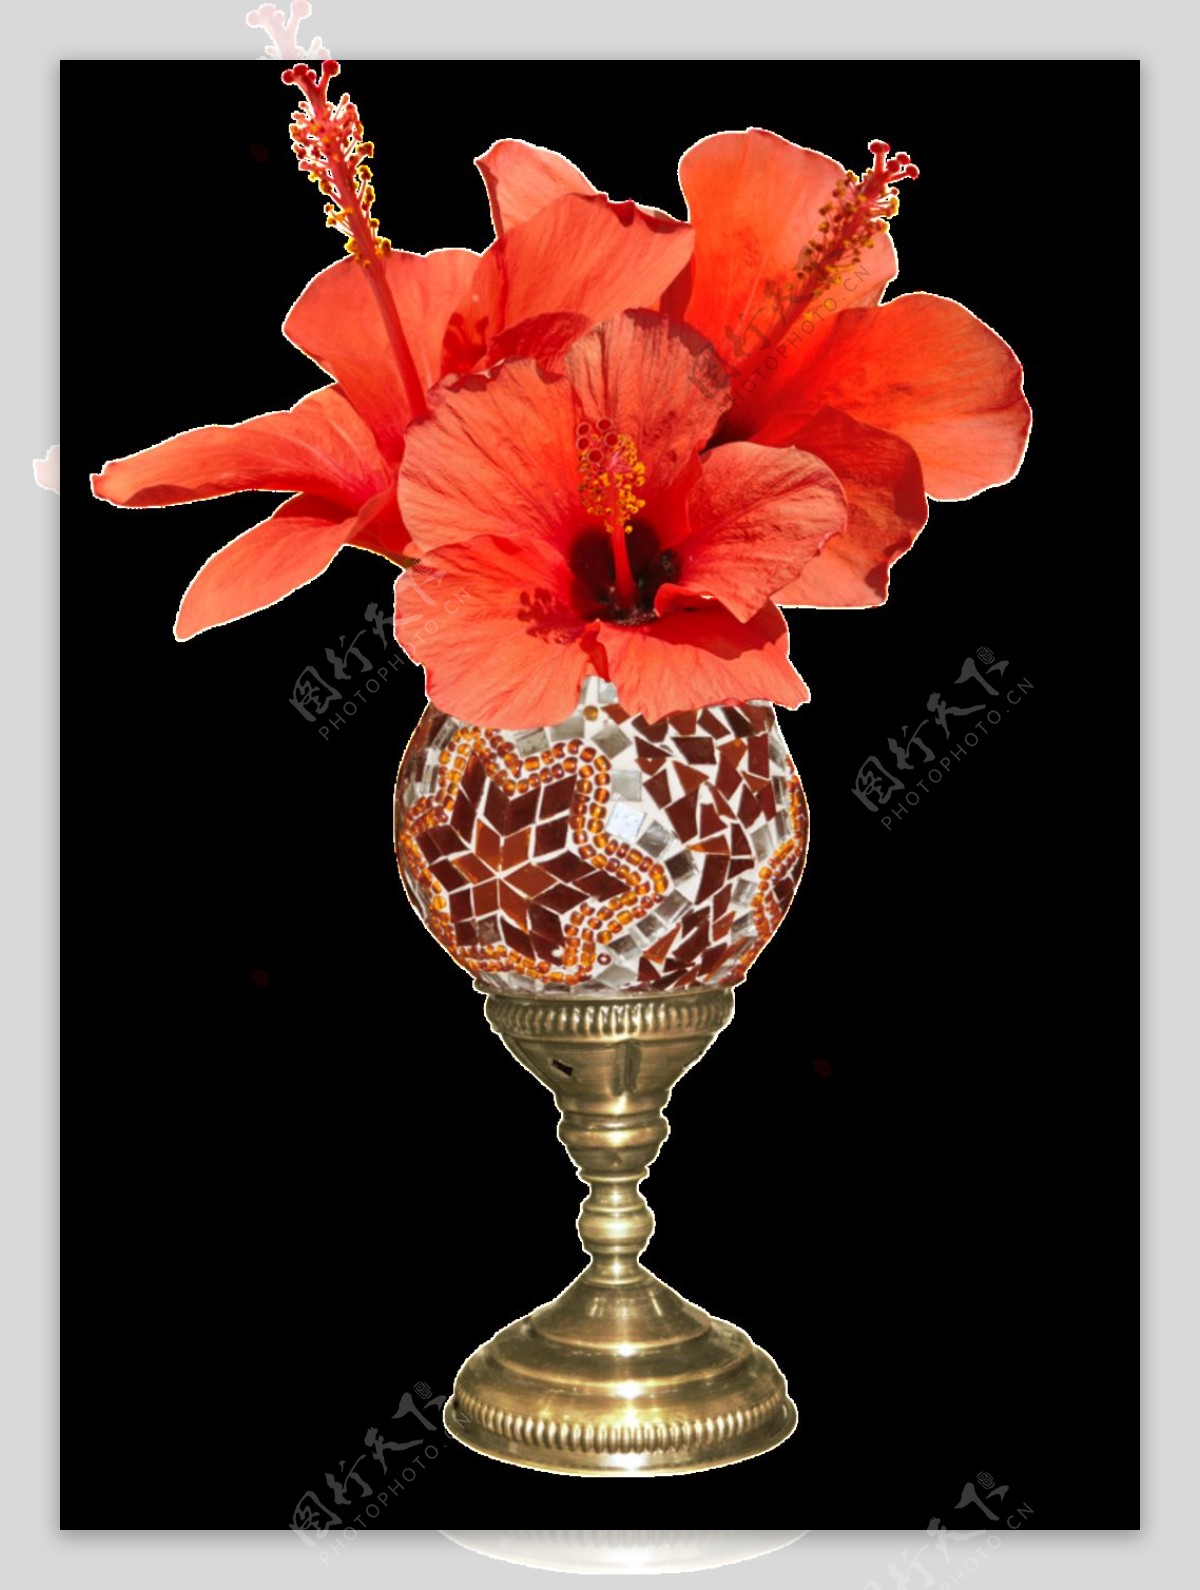 地中海风格花瓶插花png透明素材